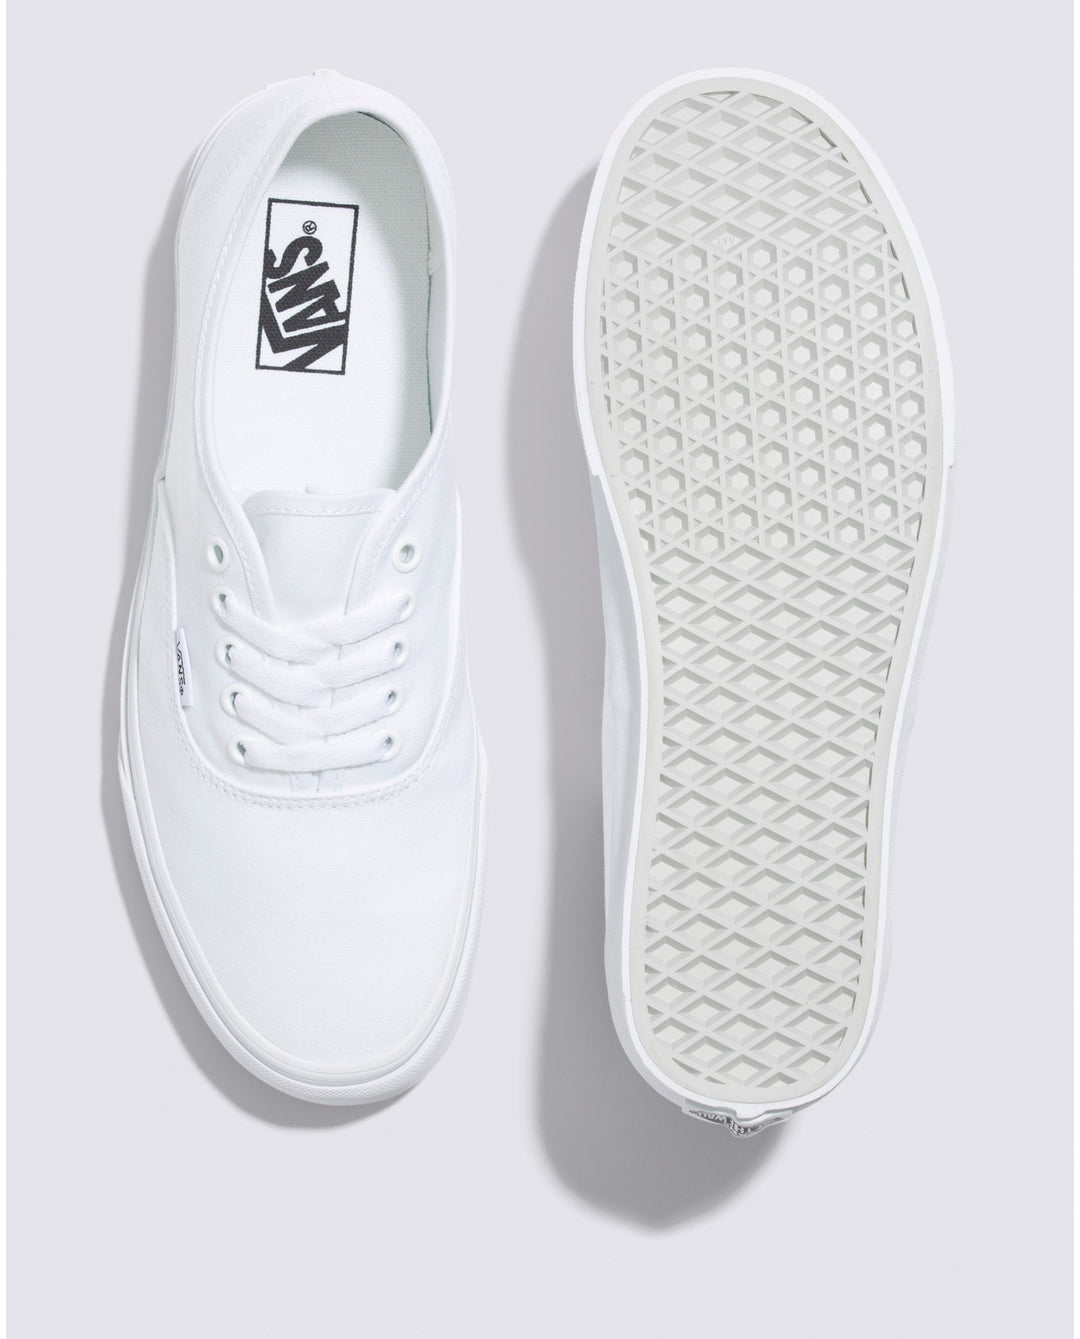 Vans Authentic Shoe - True White (Top)